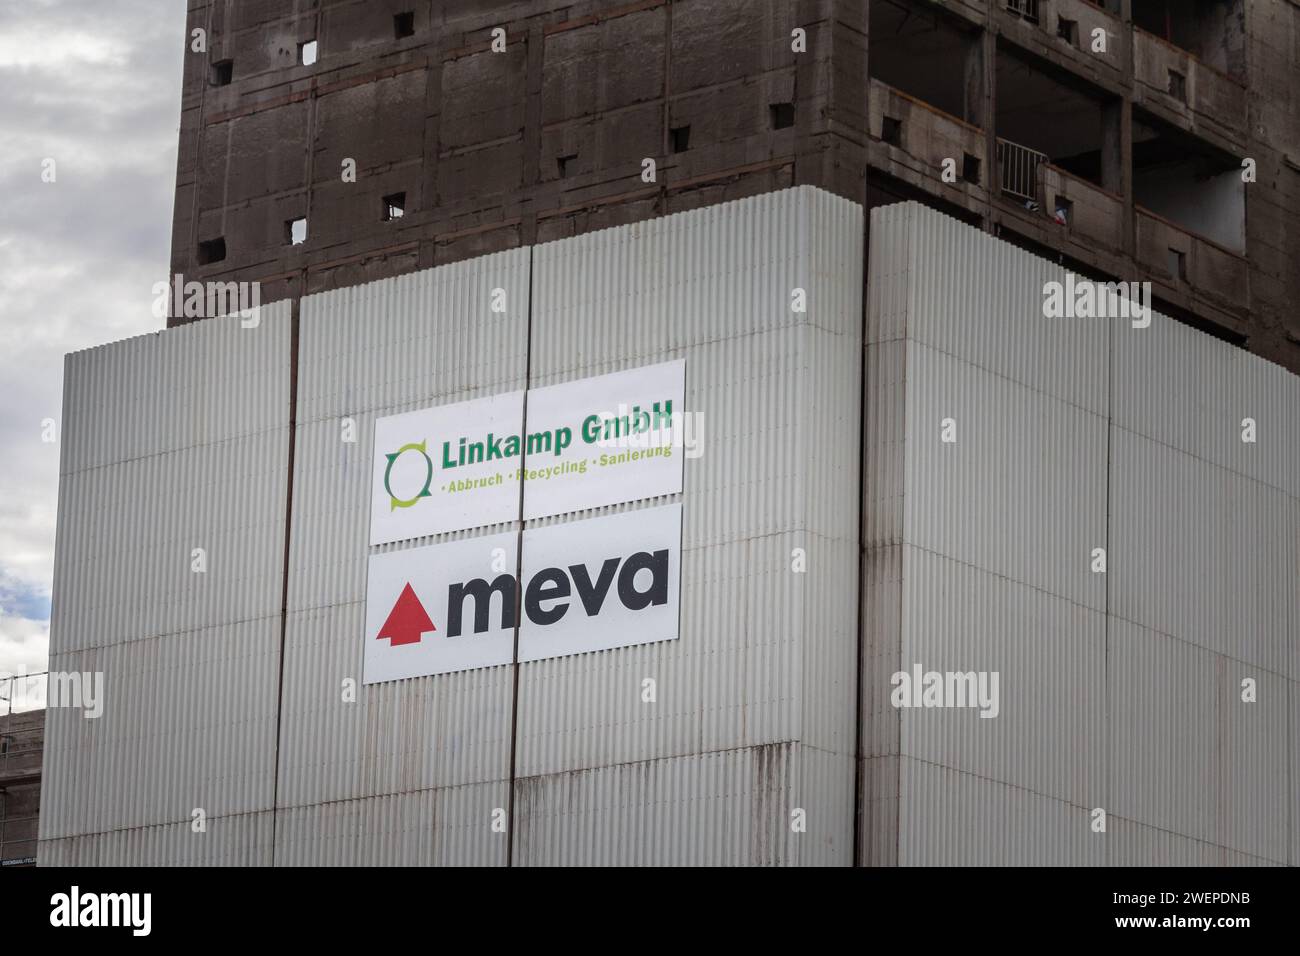 Image d'un signe avec le logo de Meva sur leur structure de coffrage de dépollution sur un bâtiment de cologne, Allemagne. Banque D'Images